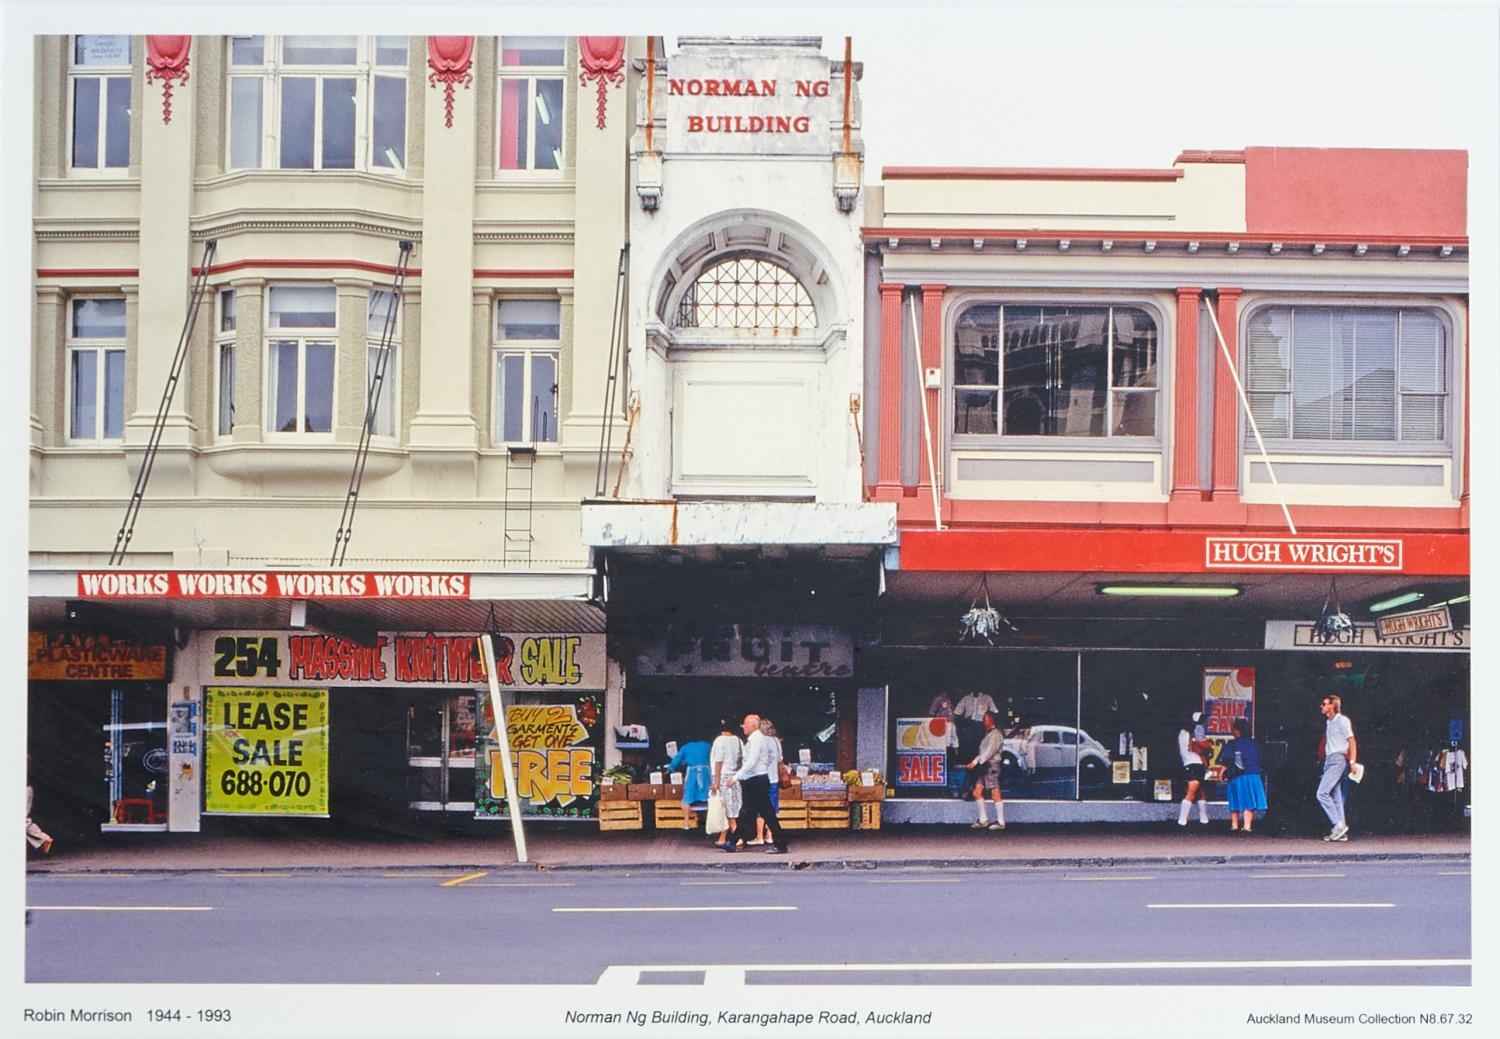 Norman Ng Building, Karangahape Road, Auckland by Robin Morrison